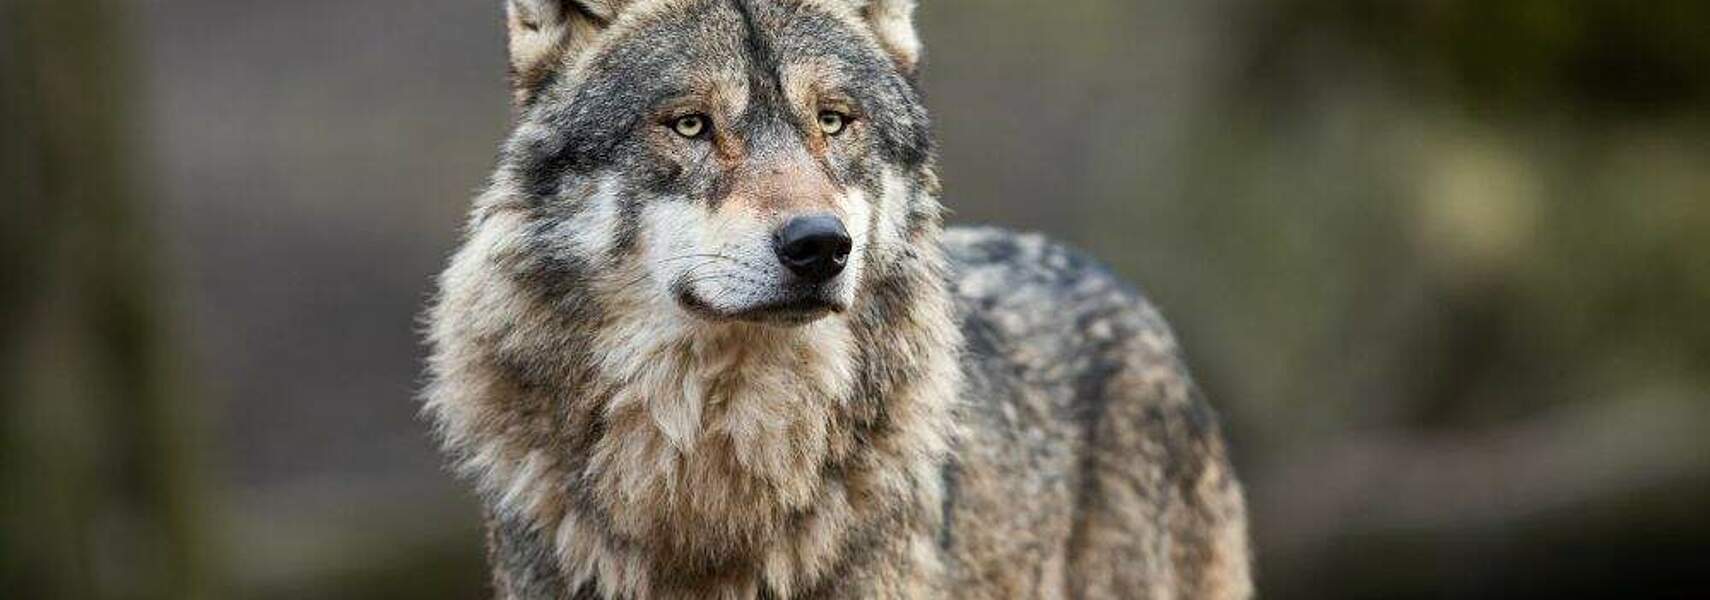 Bund muss für Länder Rechtsrahmen für Bestandsregulierung beim Wolf schaffen